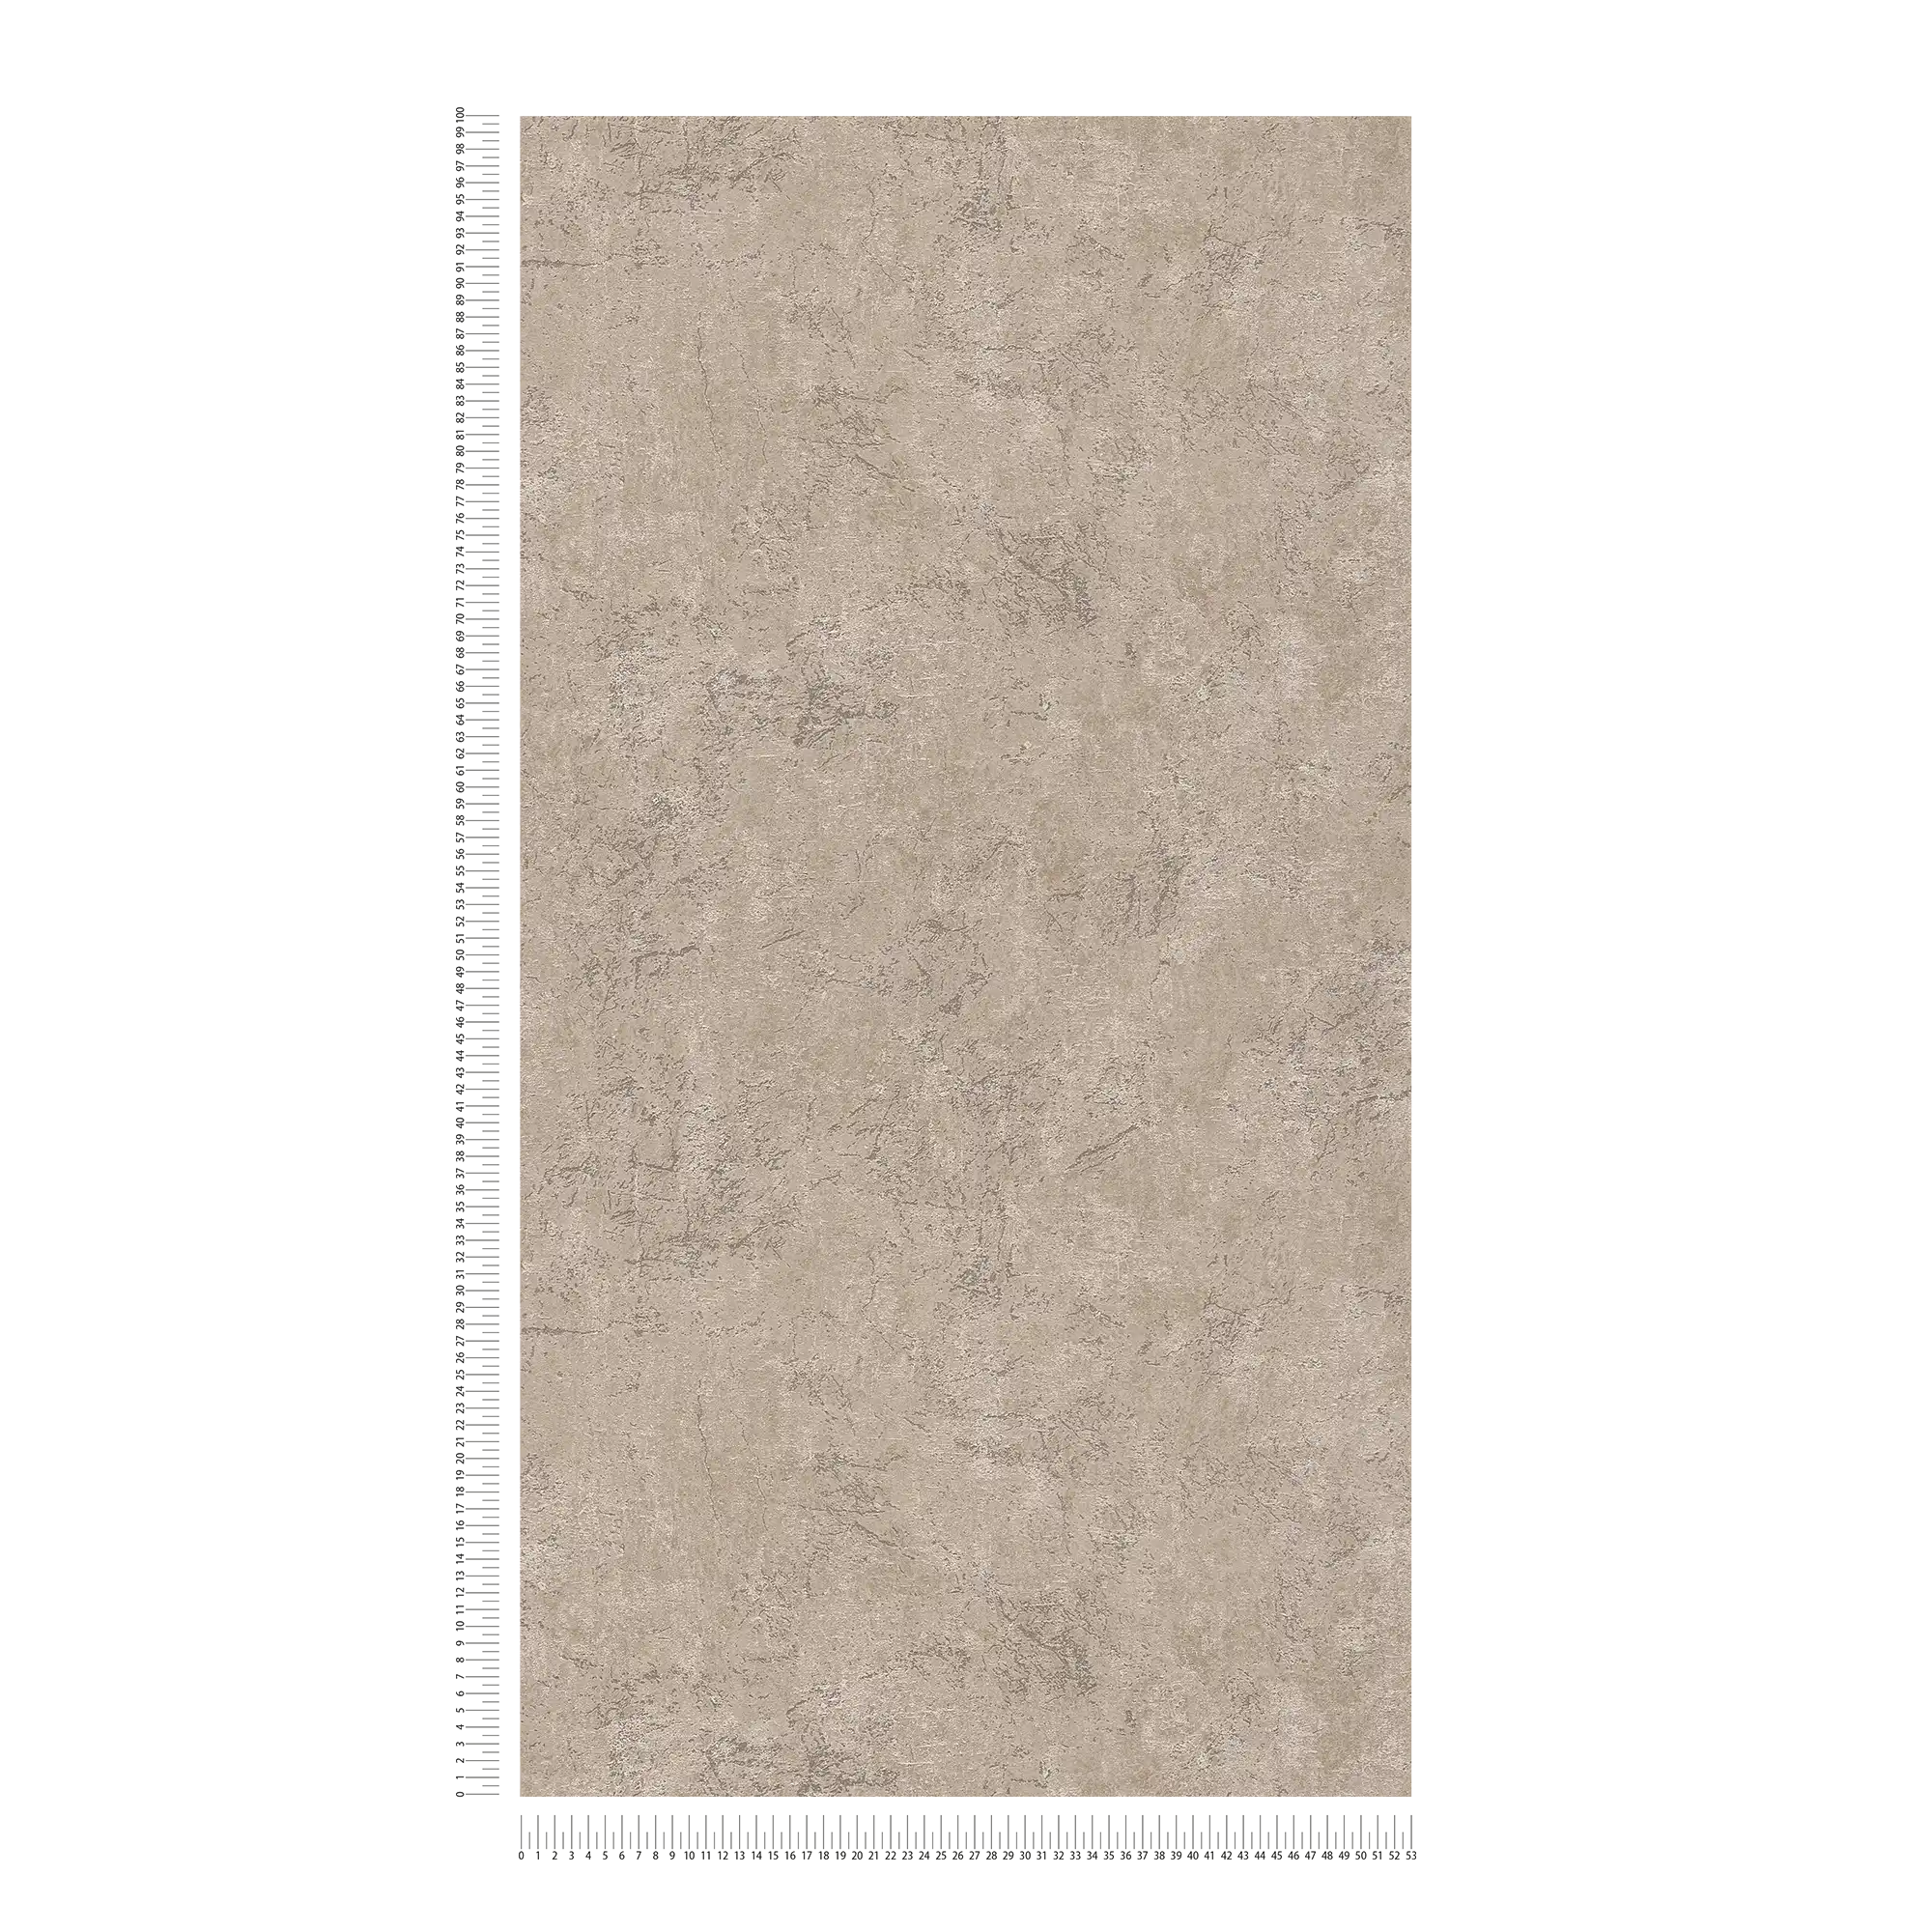             Carta da parati effetto pietra con superficie marmorizzata
        